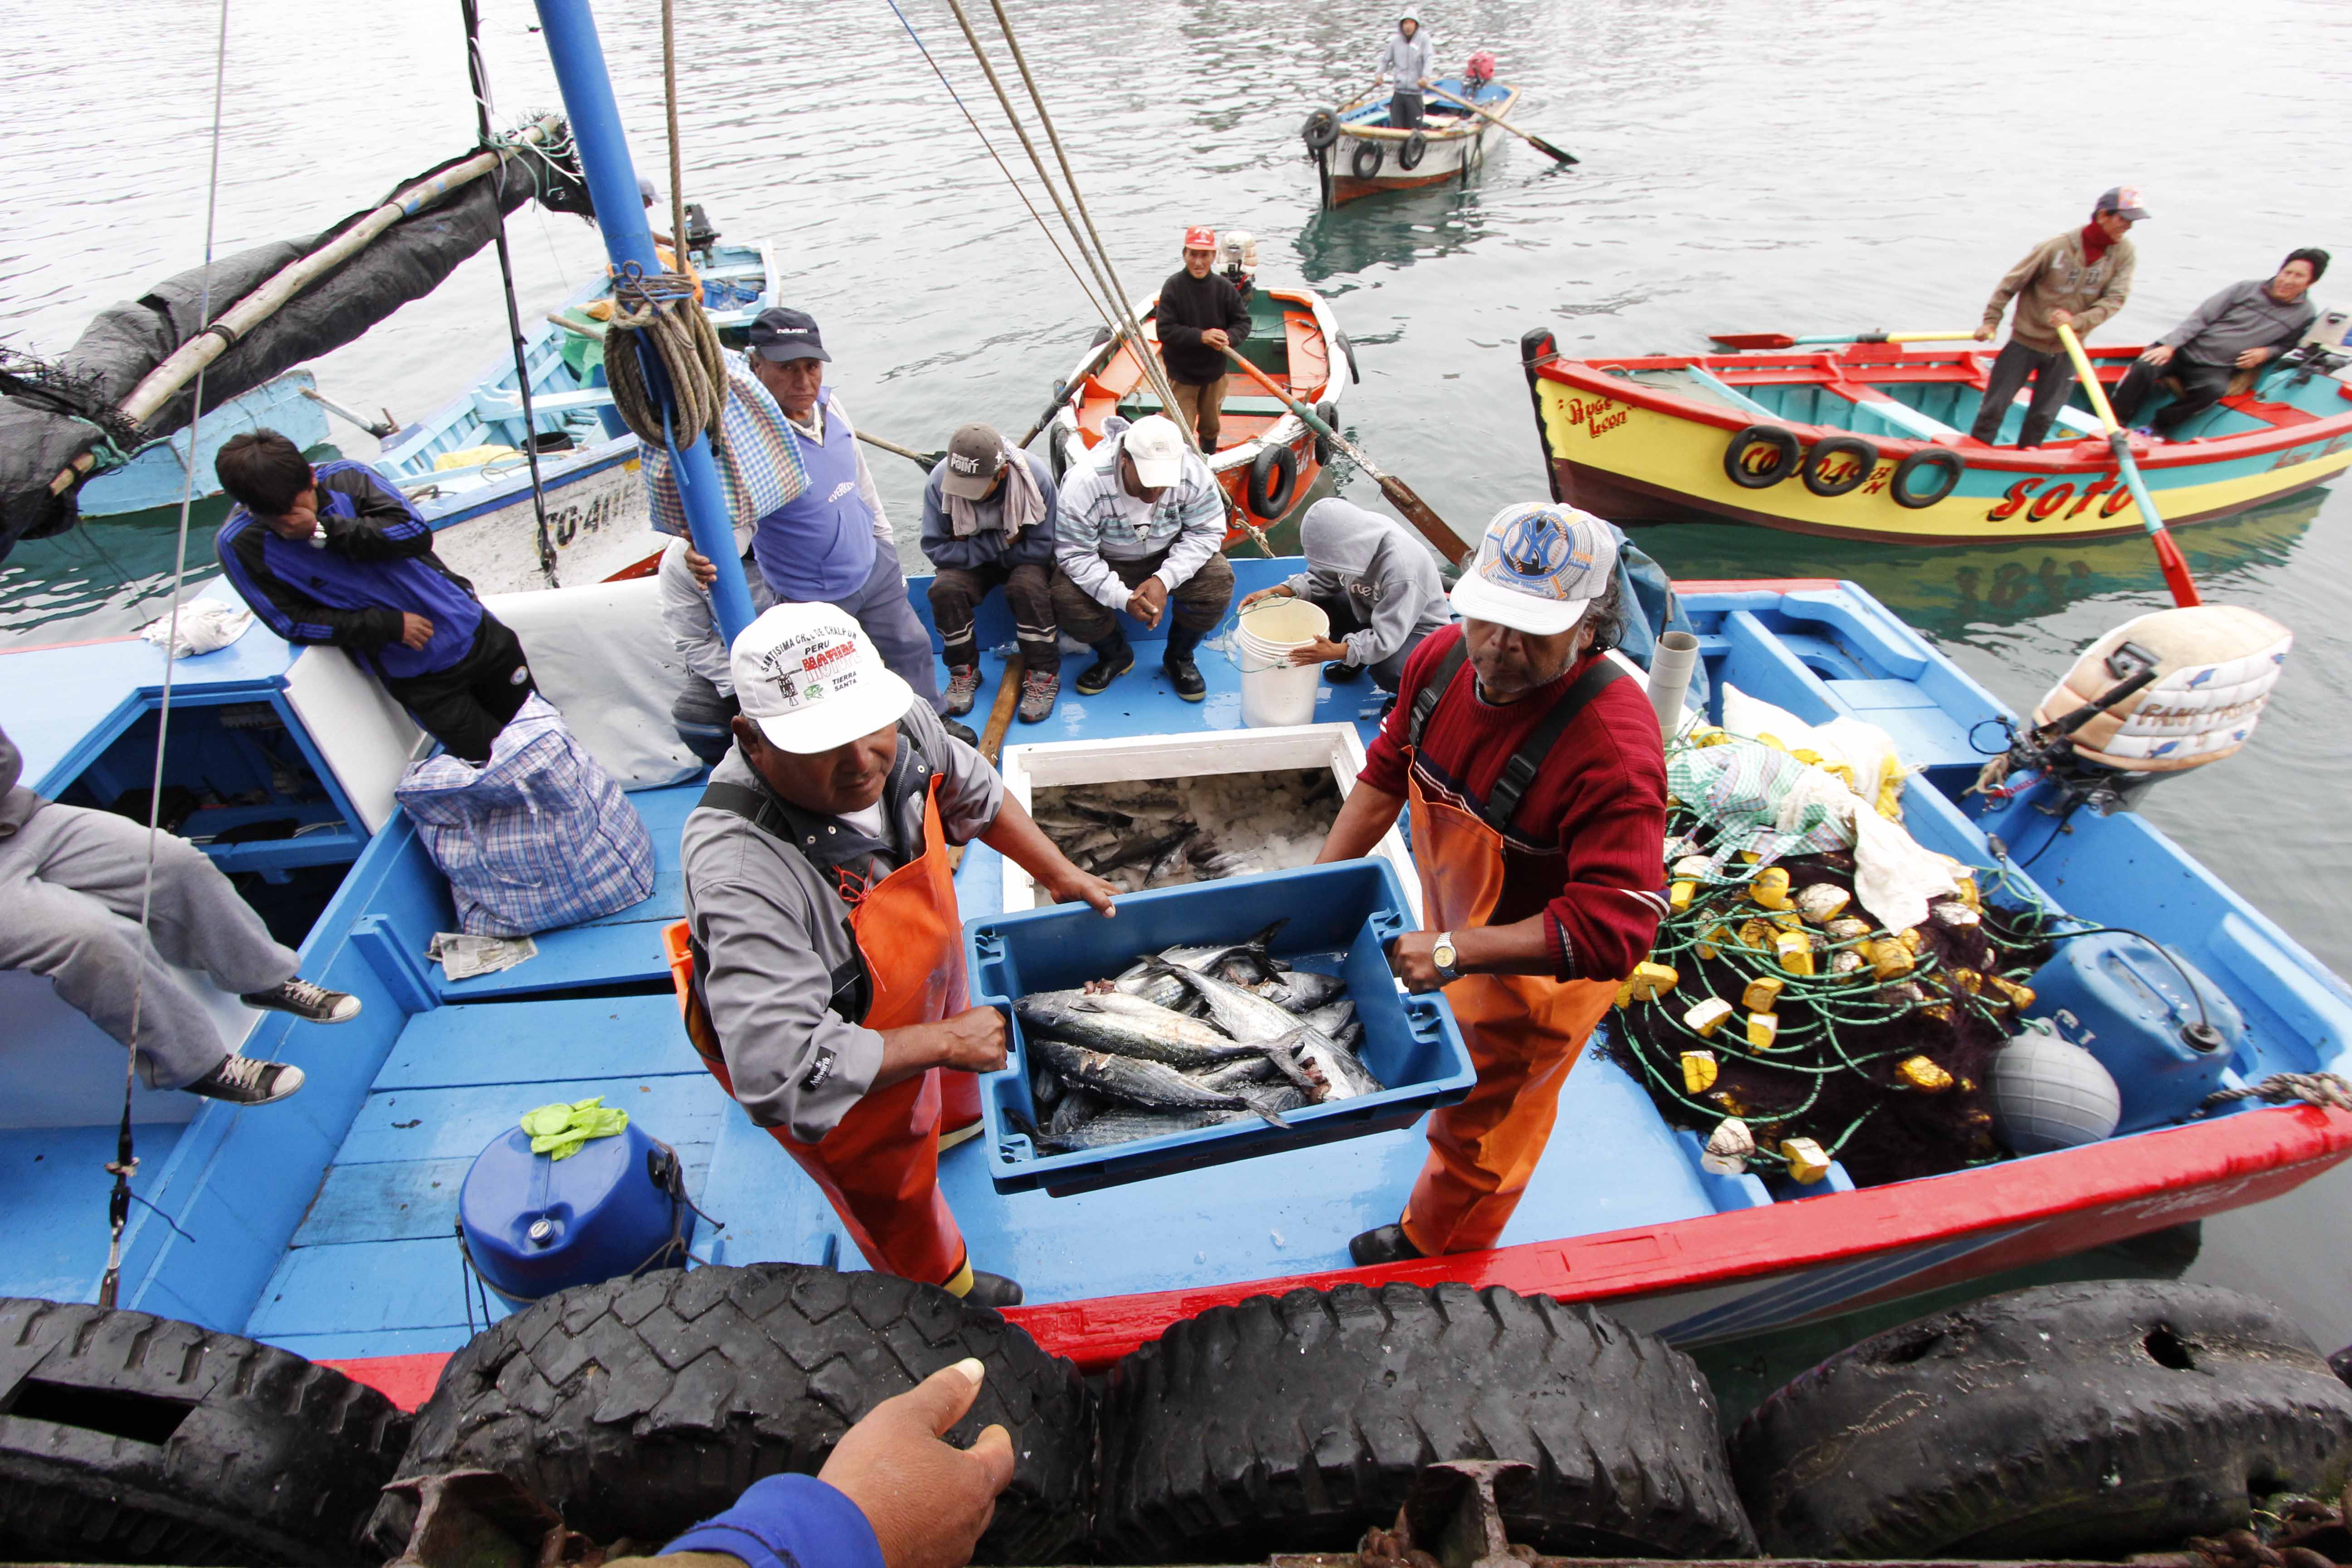 PERÚ: Gobierno aprueba transferencia para reactivar economía de pescadores artesanales